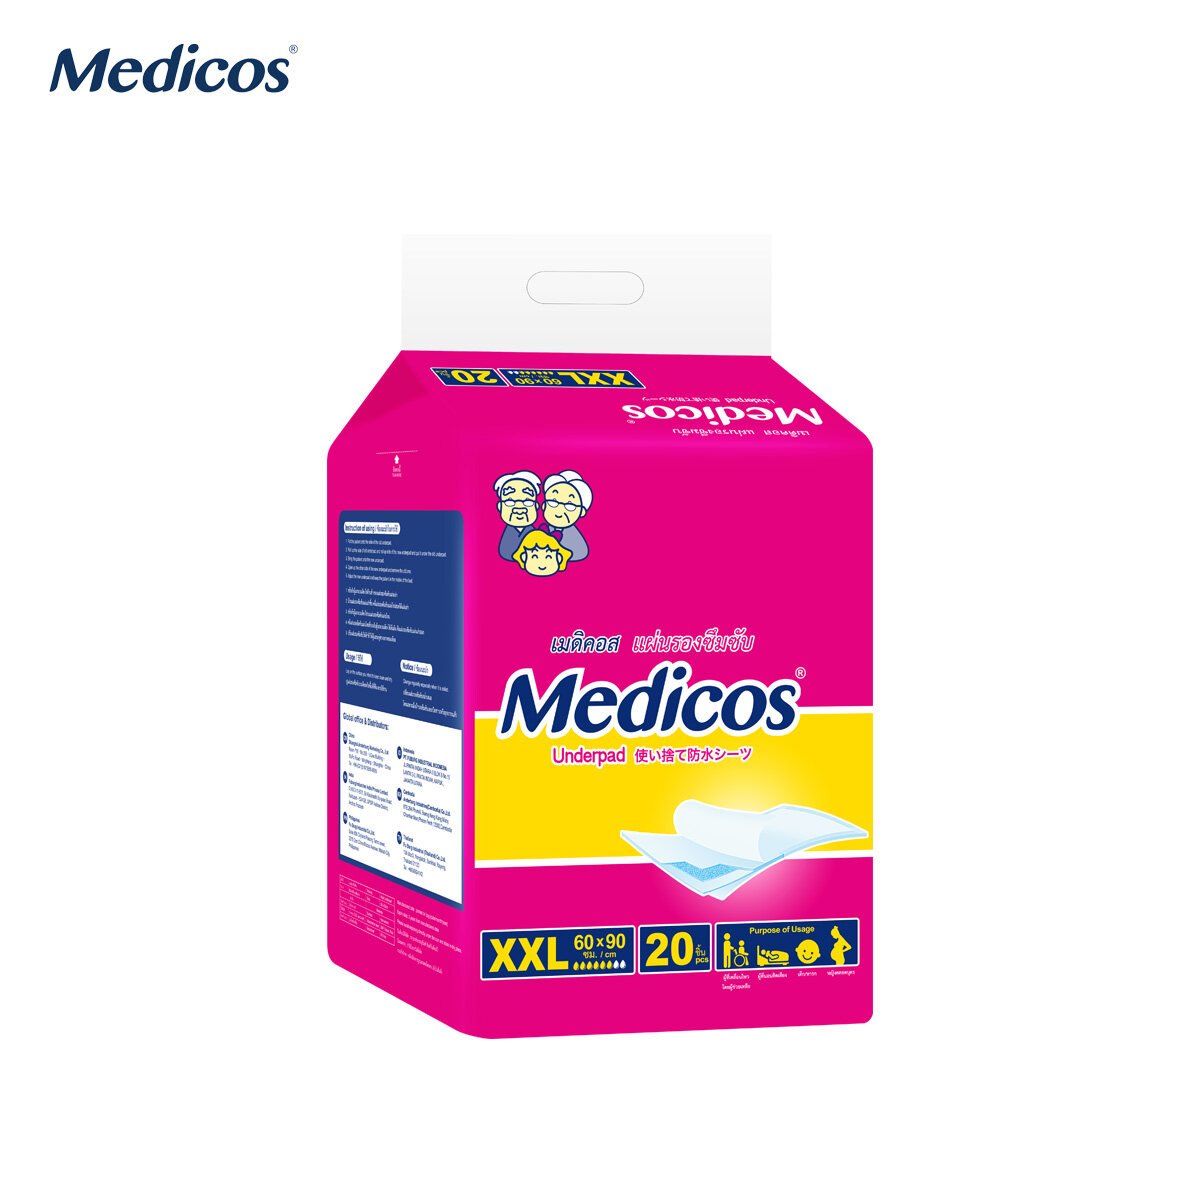 แผ่นรองซับเมดิคอส Medicos ขนาด XXL 20 ชิ้น ( 60x90 ซม. )